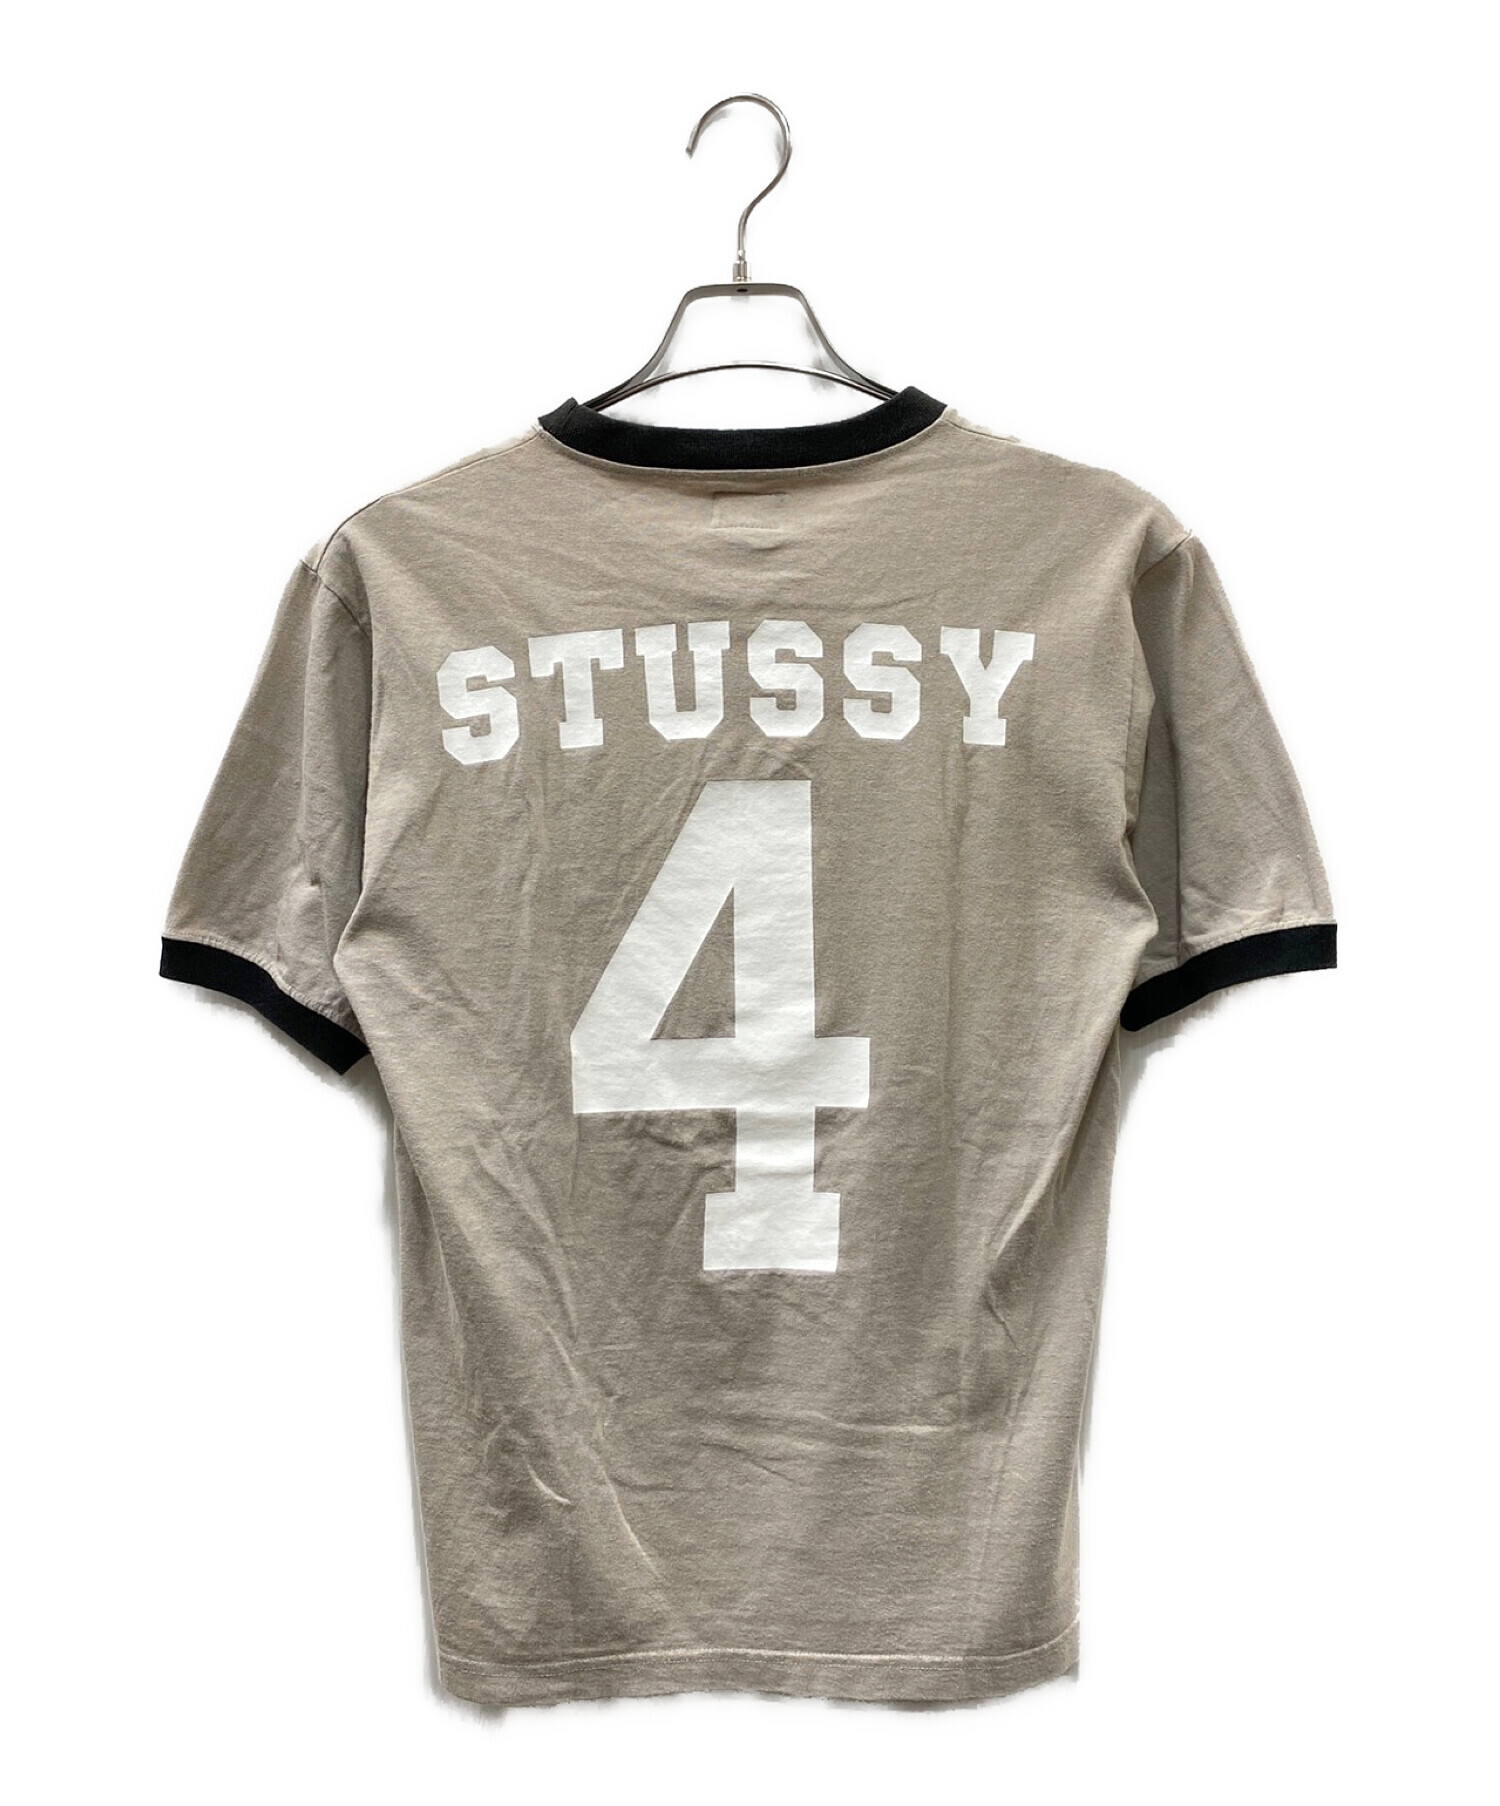 中古・古着通販】stussy (ステューシー) 90S'プリントTシャツ グレー 